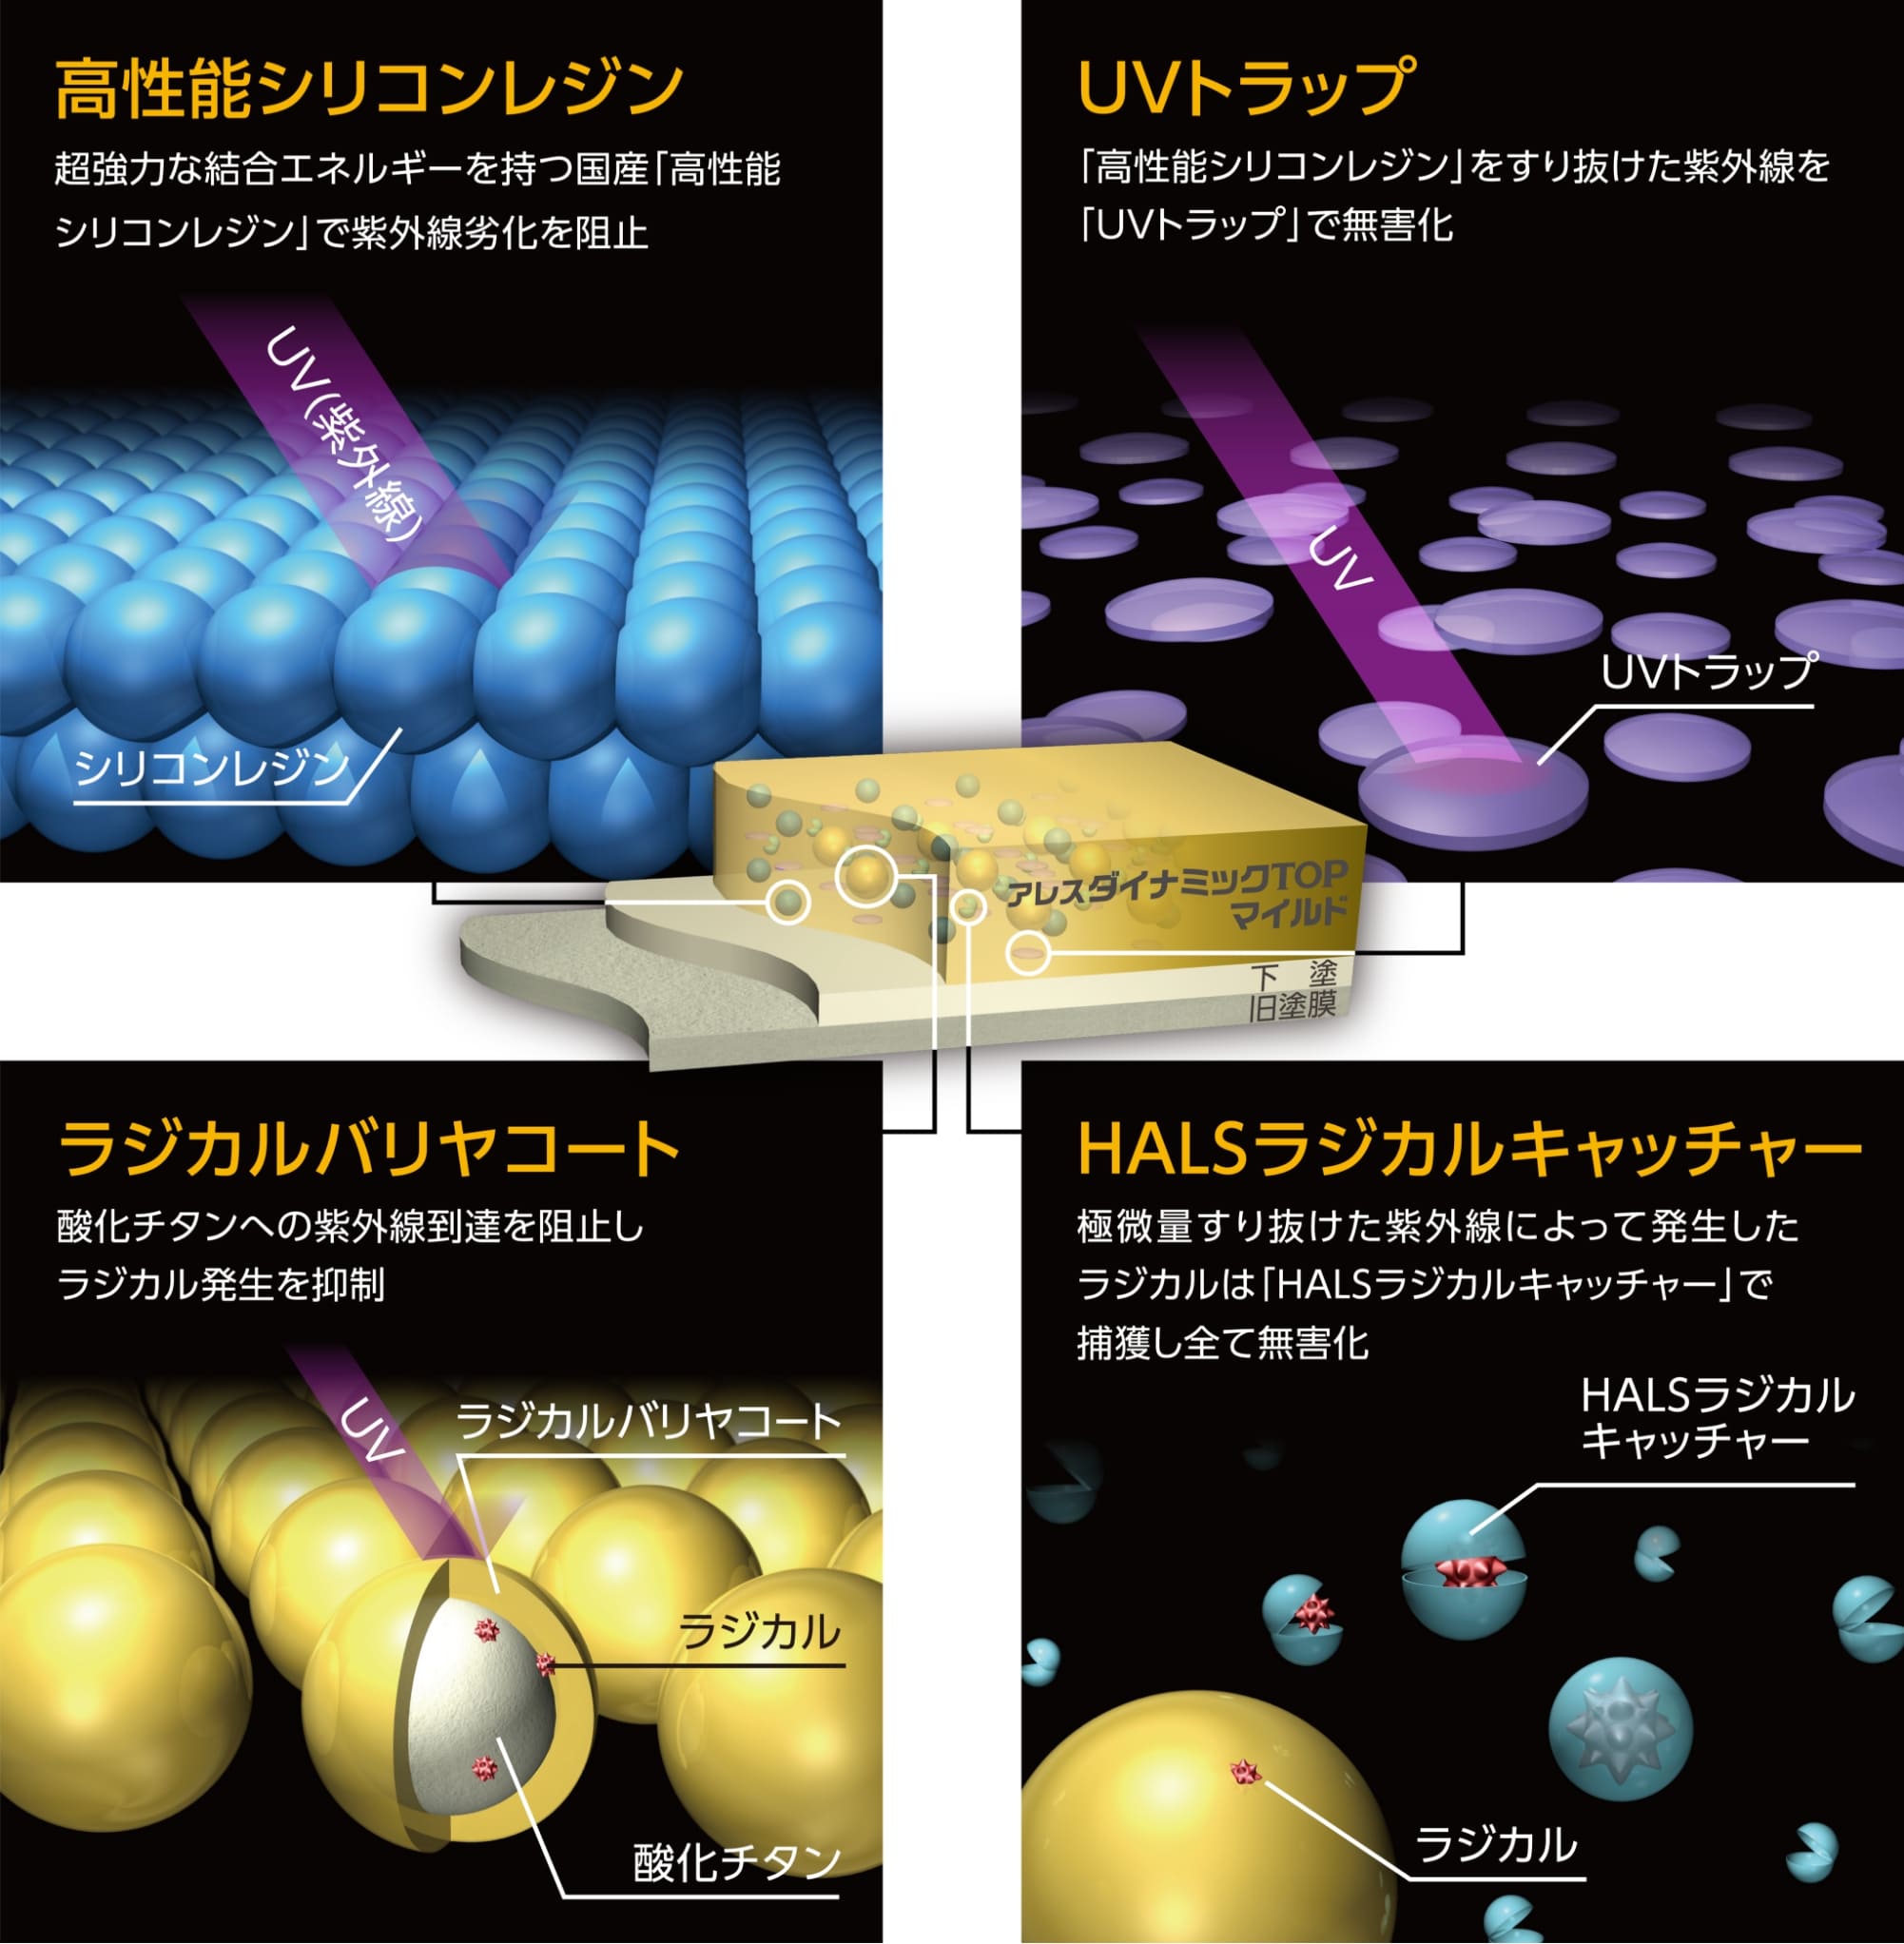 4つの技術で紫外線から素材を護る